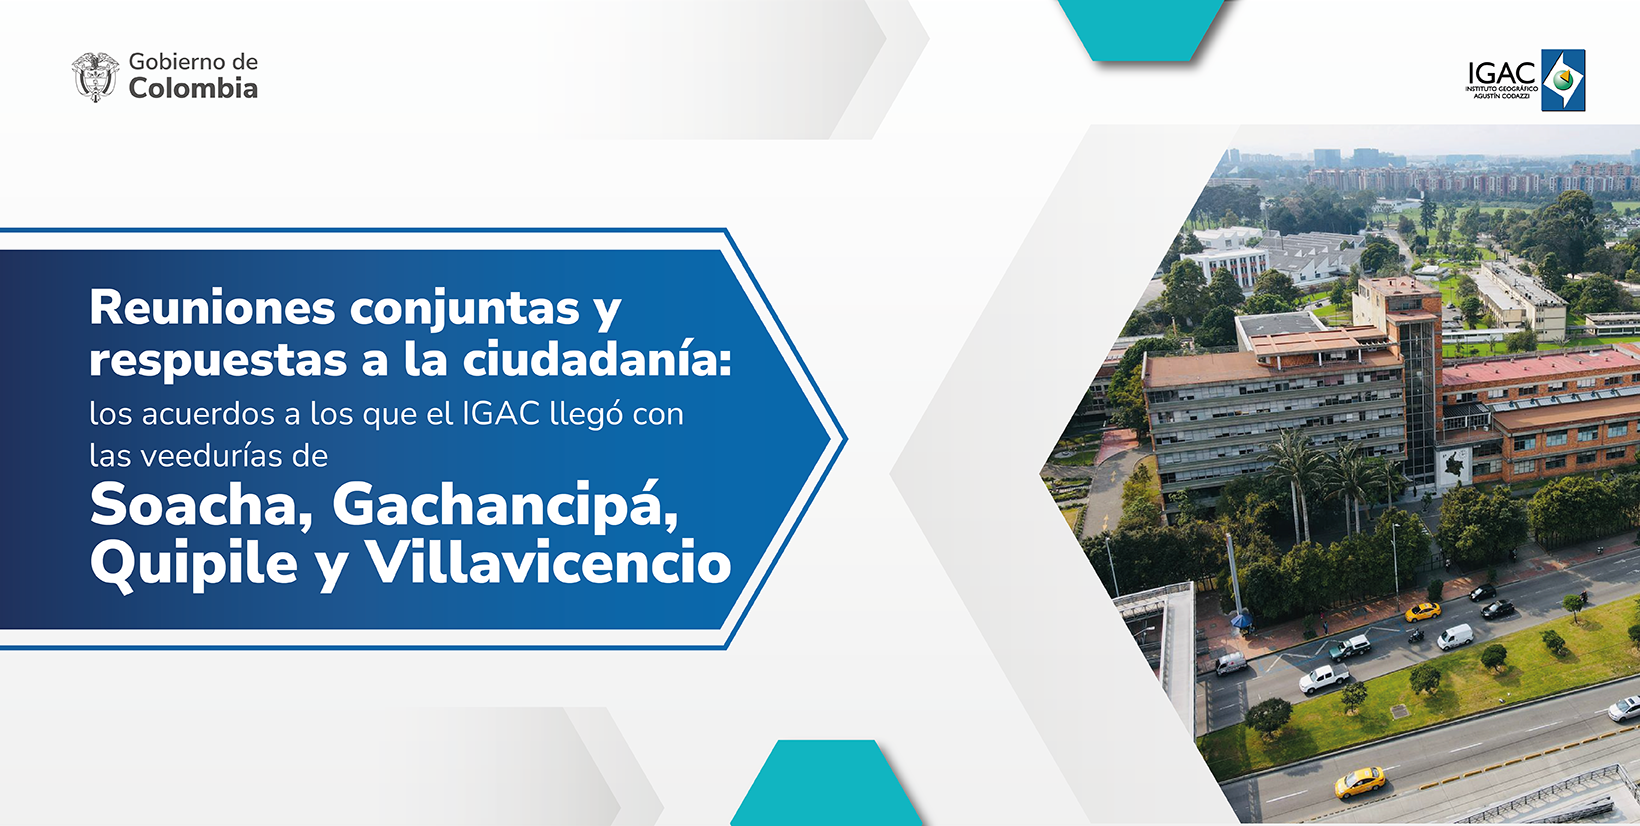 Reuniones conjuntas y respuestas a la ciudadanía: los acuerdos a los que el IGAC llegó con las veedurías de Soacha, Gachanchipá, Quipile y Villavicencio